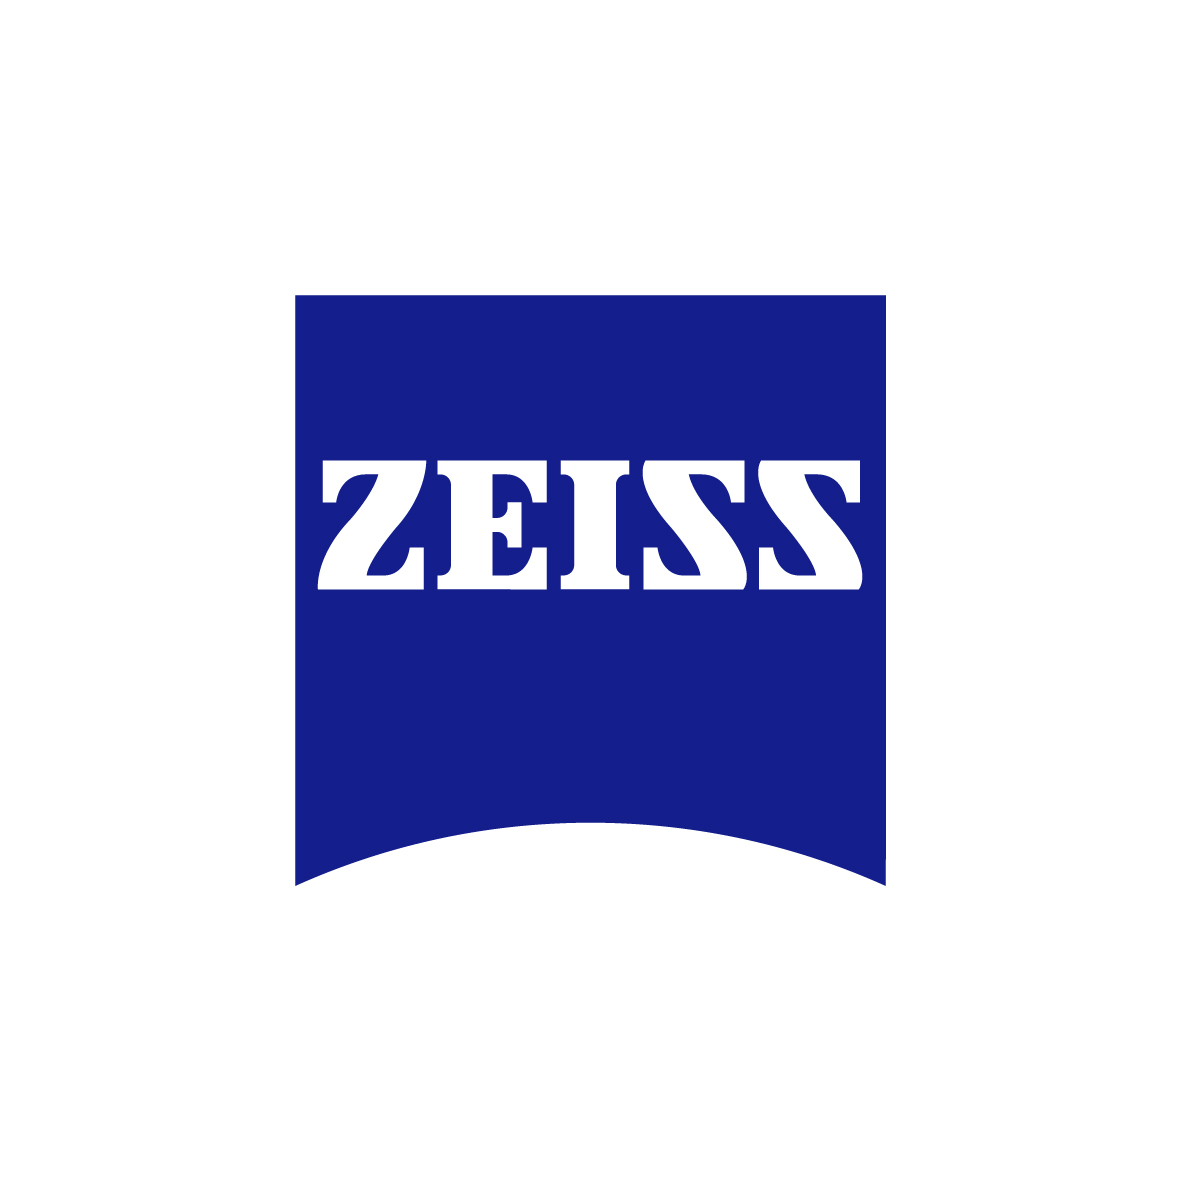 ZEISS | زایس